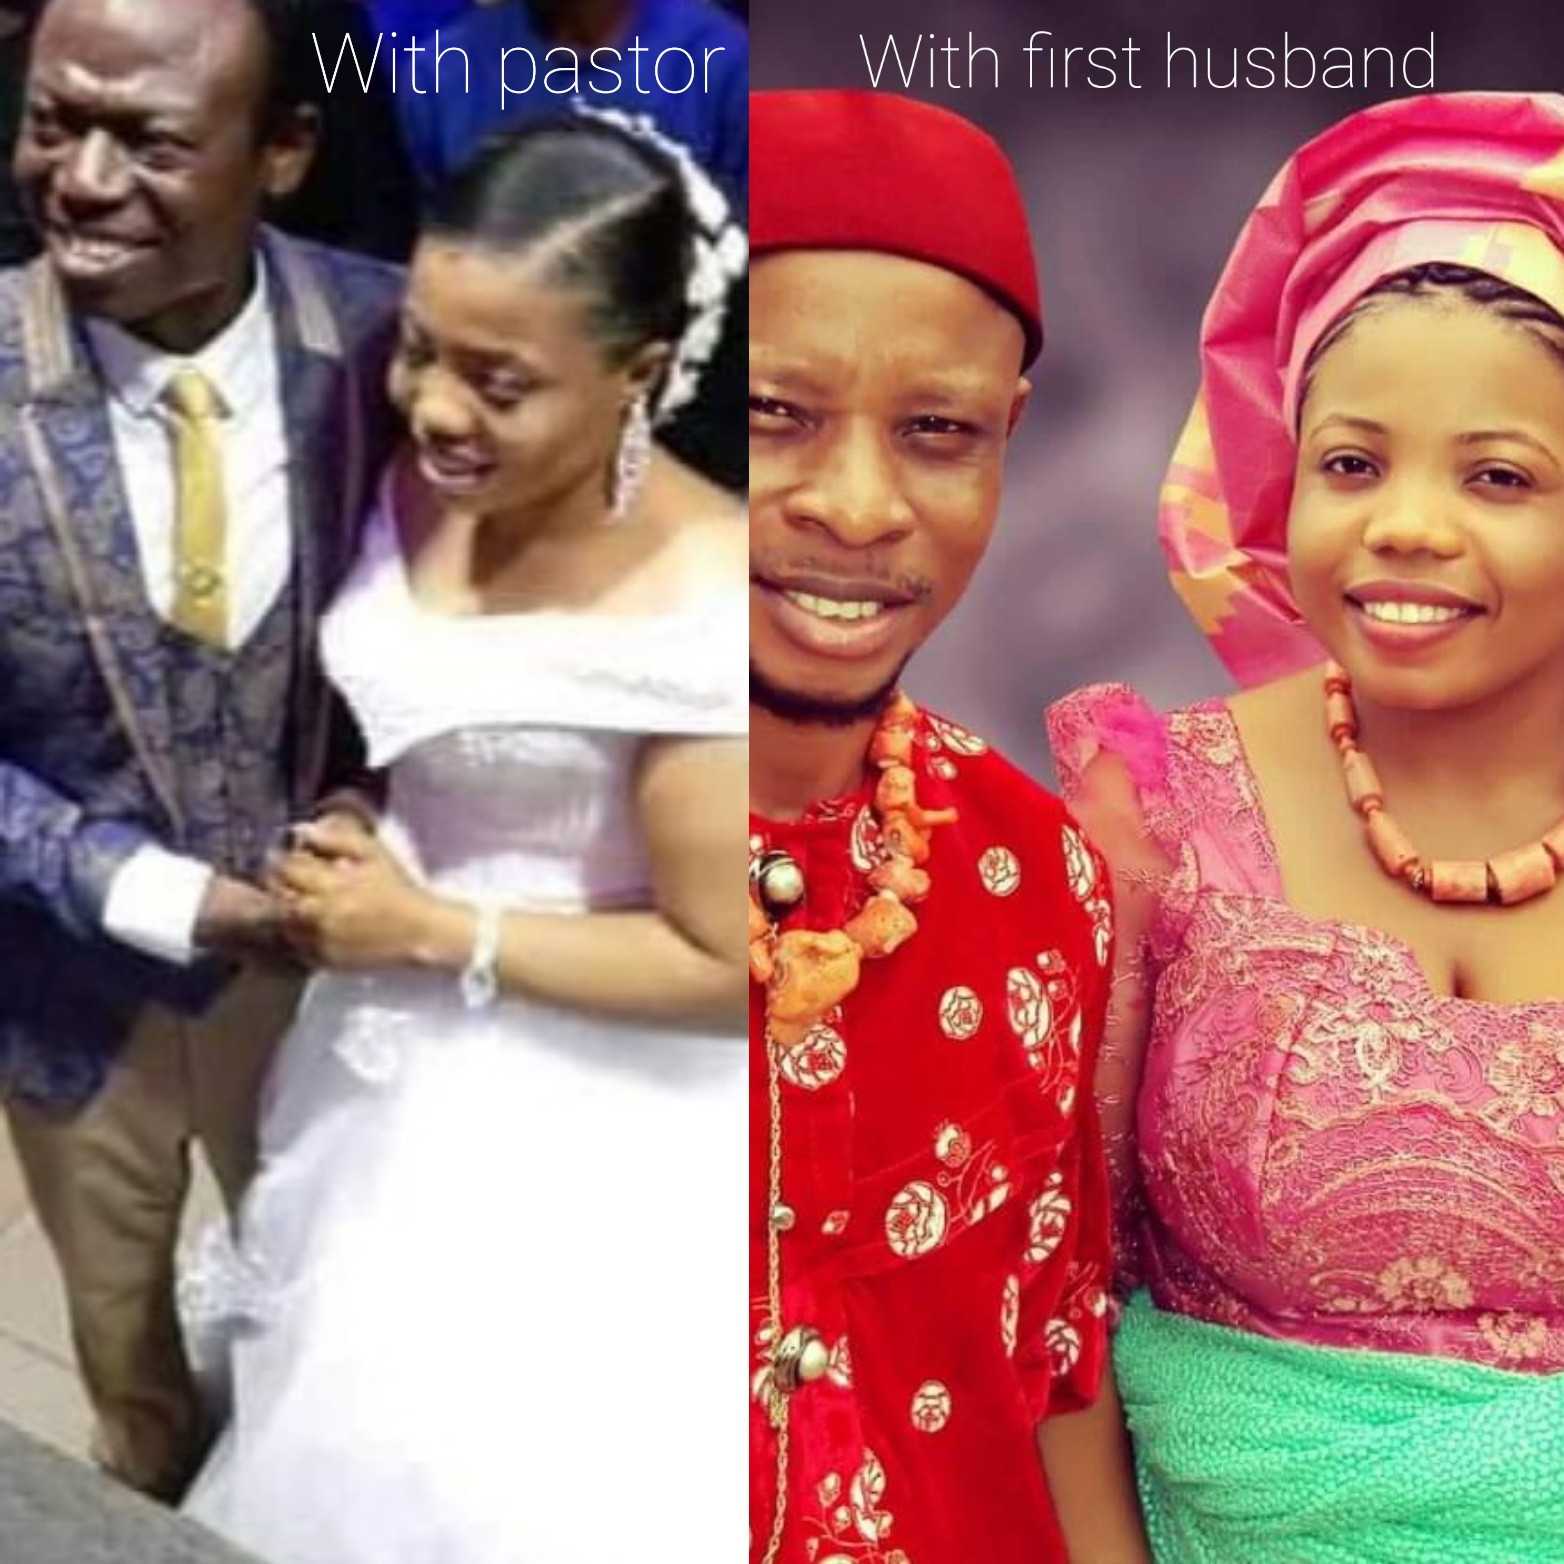 Moses Adeeyo married